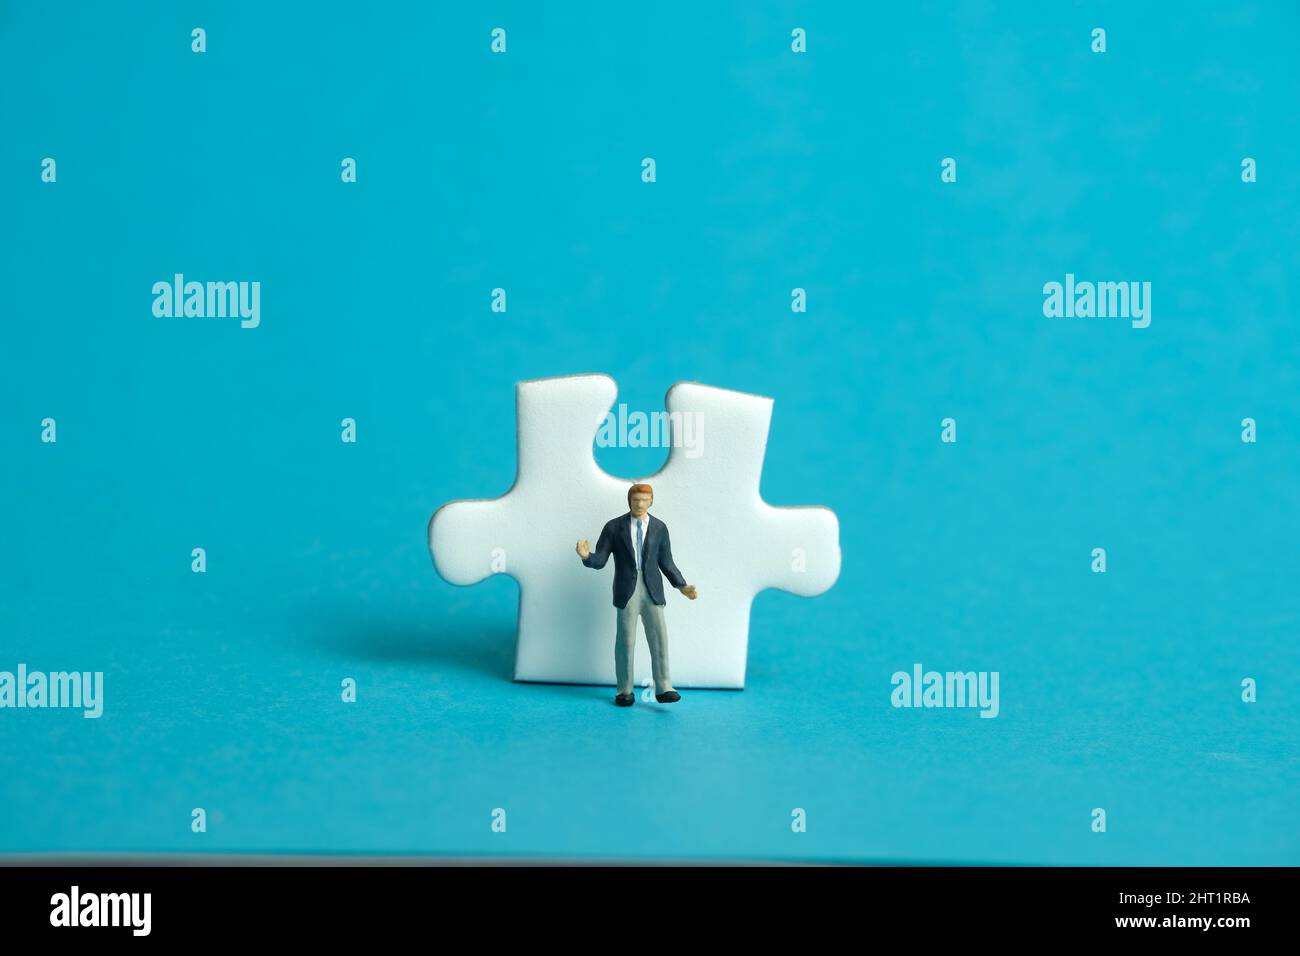 Miniatur Menschen Spielzeug Figur Fotografie. Ein schnupfender Geschäftsmann, der vor einem Puzzle-Puzzleteil steht. Isoliert auf blauem Hintergrund. Bildfoto Stockfoto